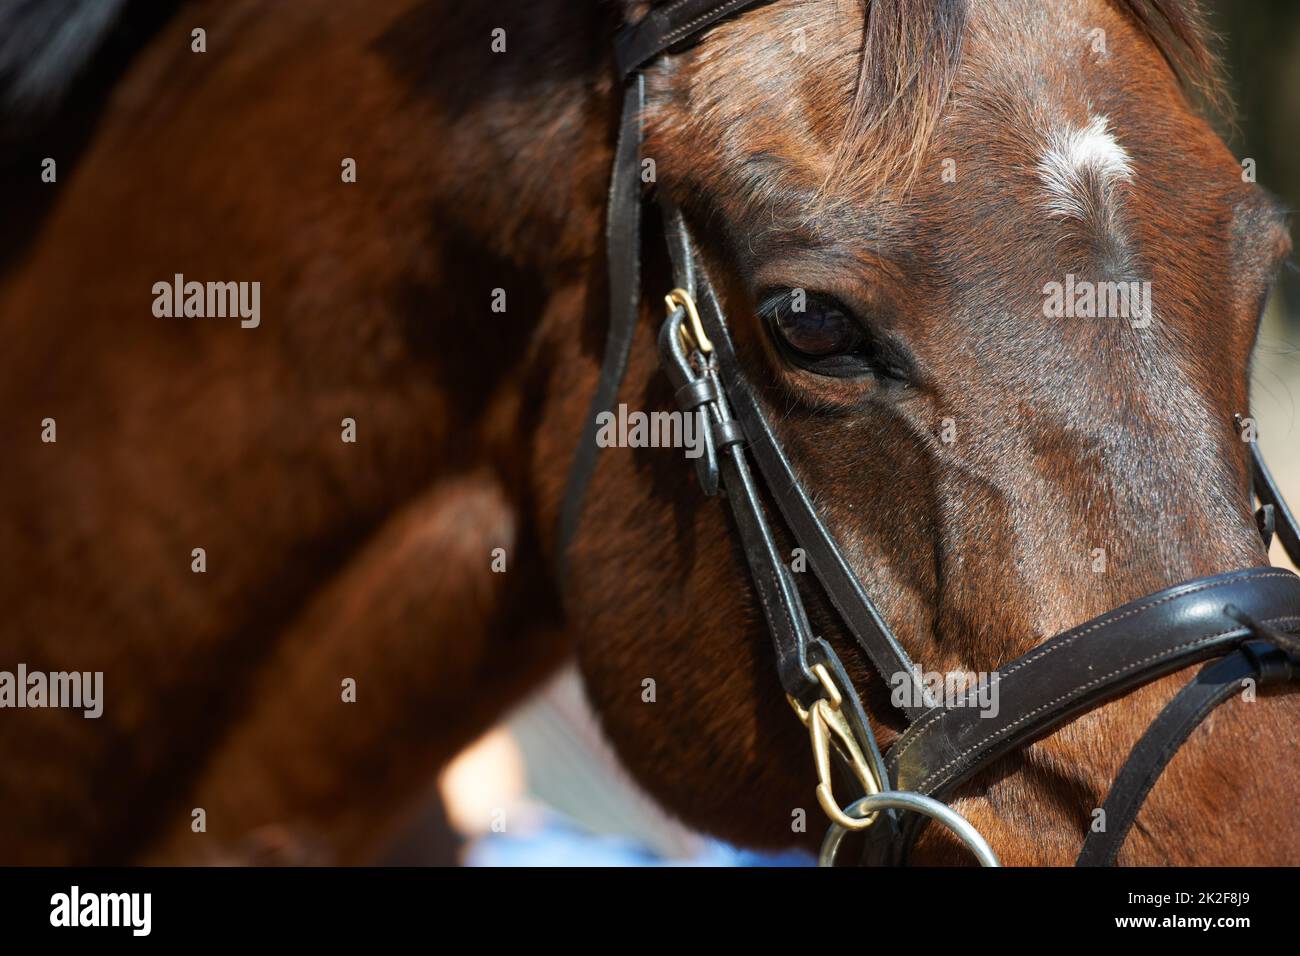 Il cavallo è una creatura così maestosa. Immagine closeup di un cavallo marrone con una briglia. Foto Stock